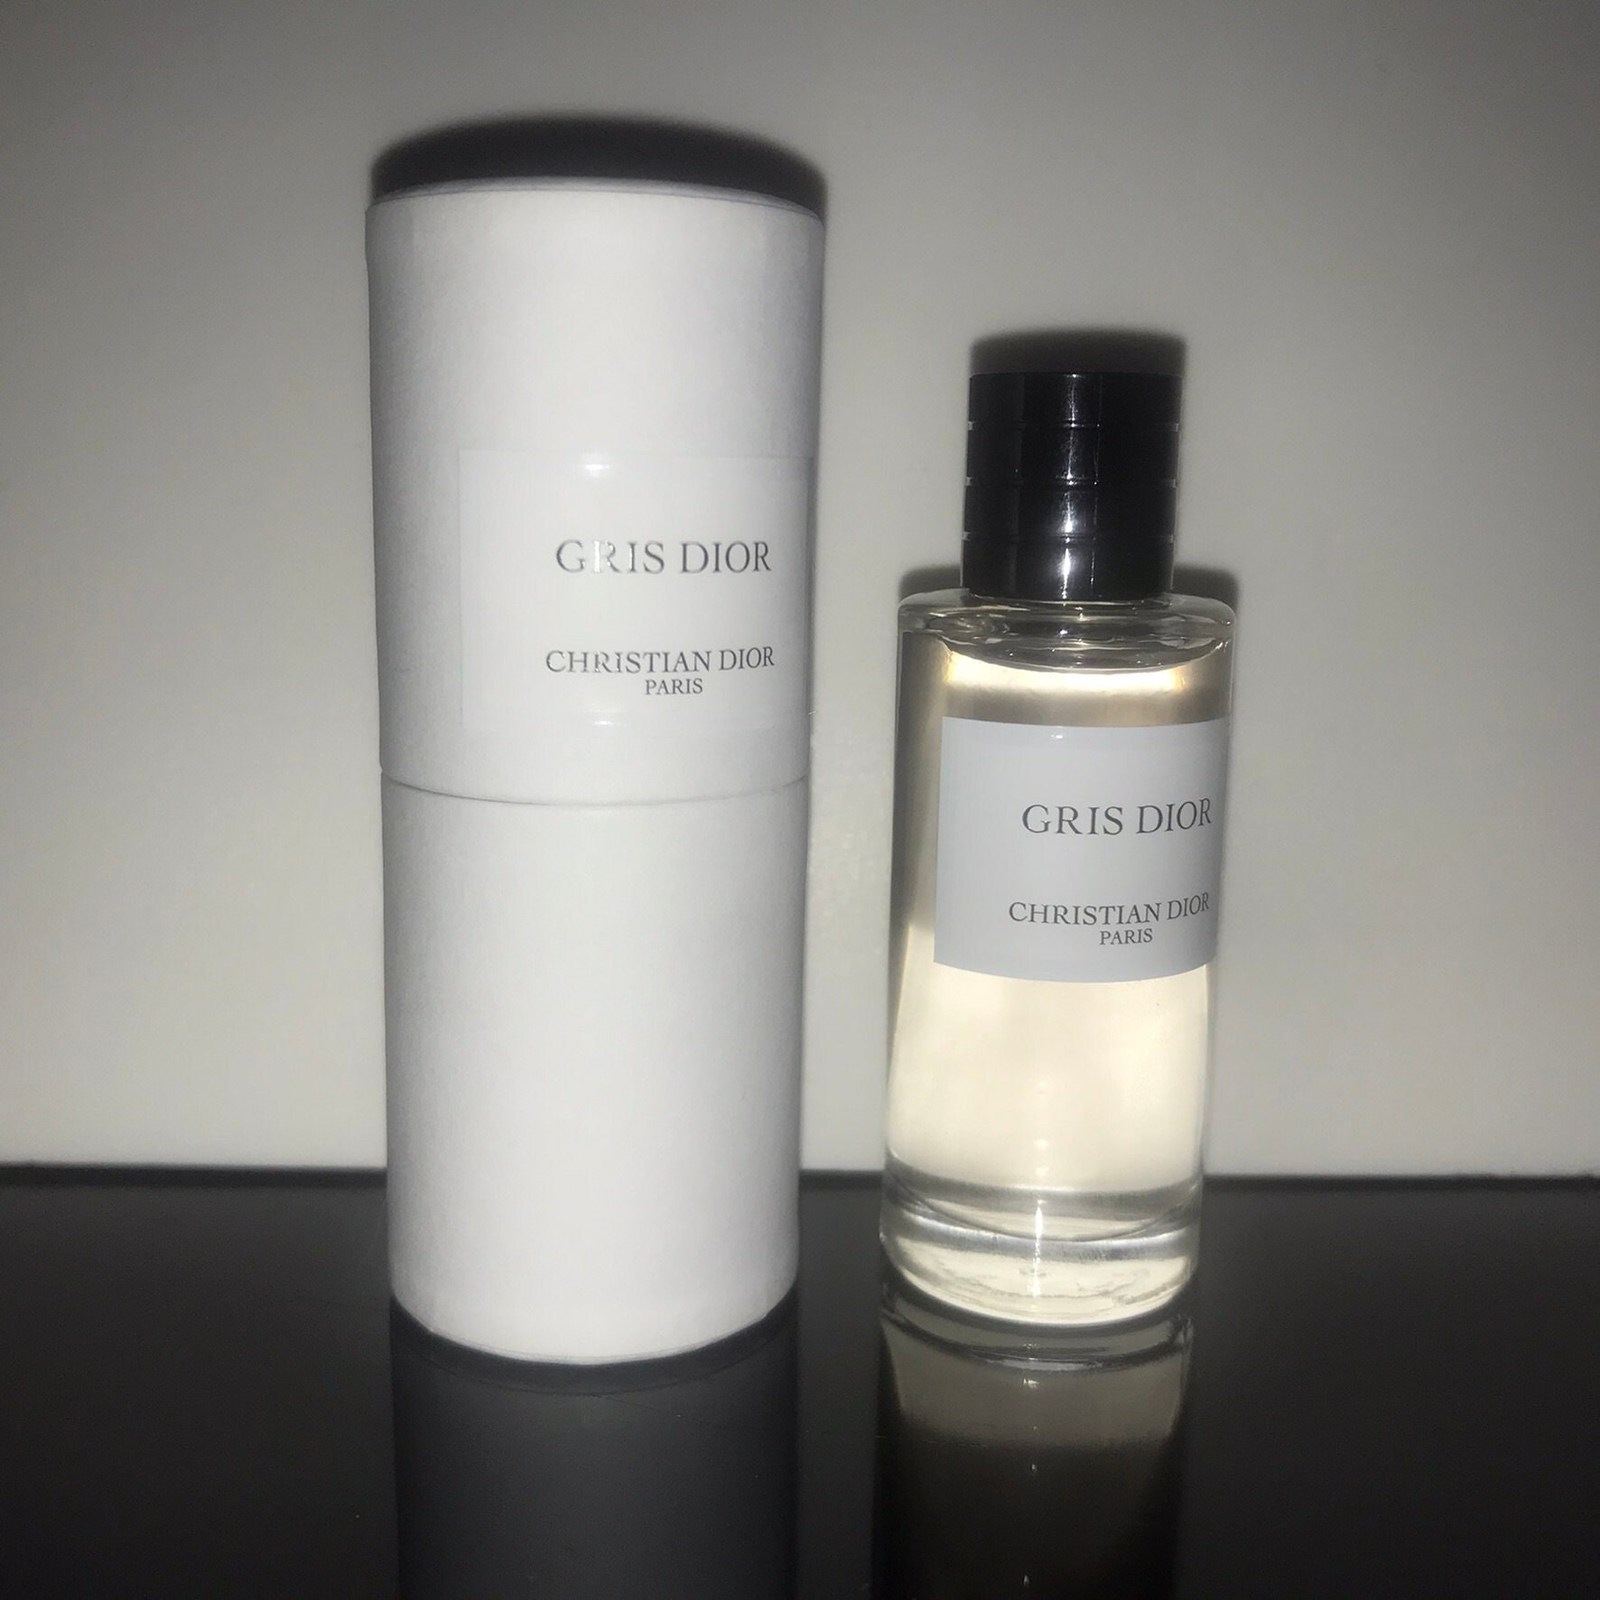 Christian Dior - Gris Dior - Eau de Parfum - 7.5 ml - UNISEX - $129.00